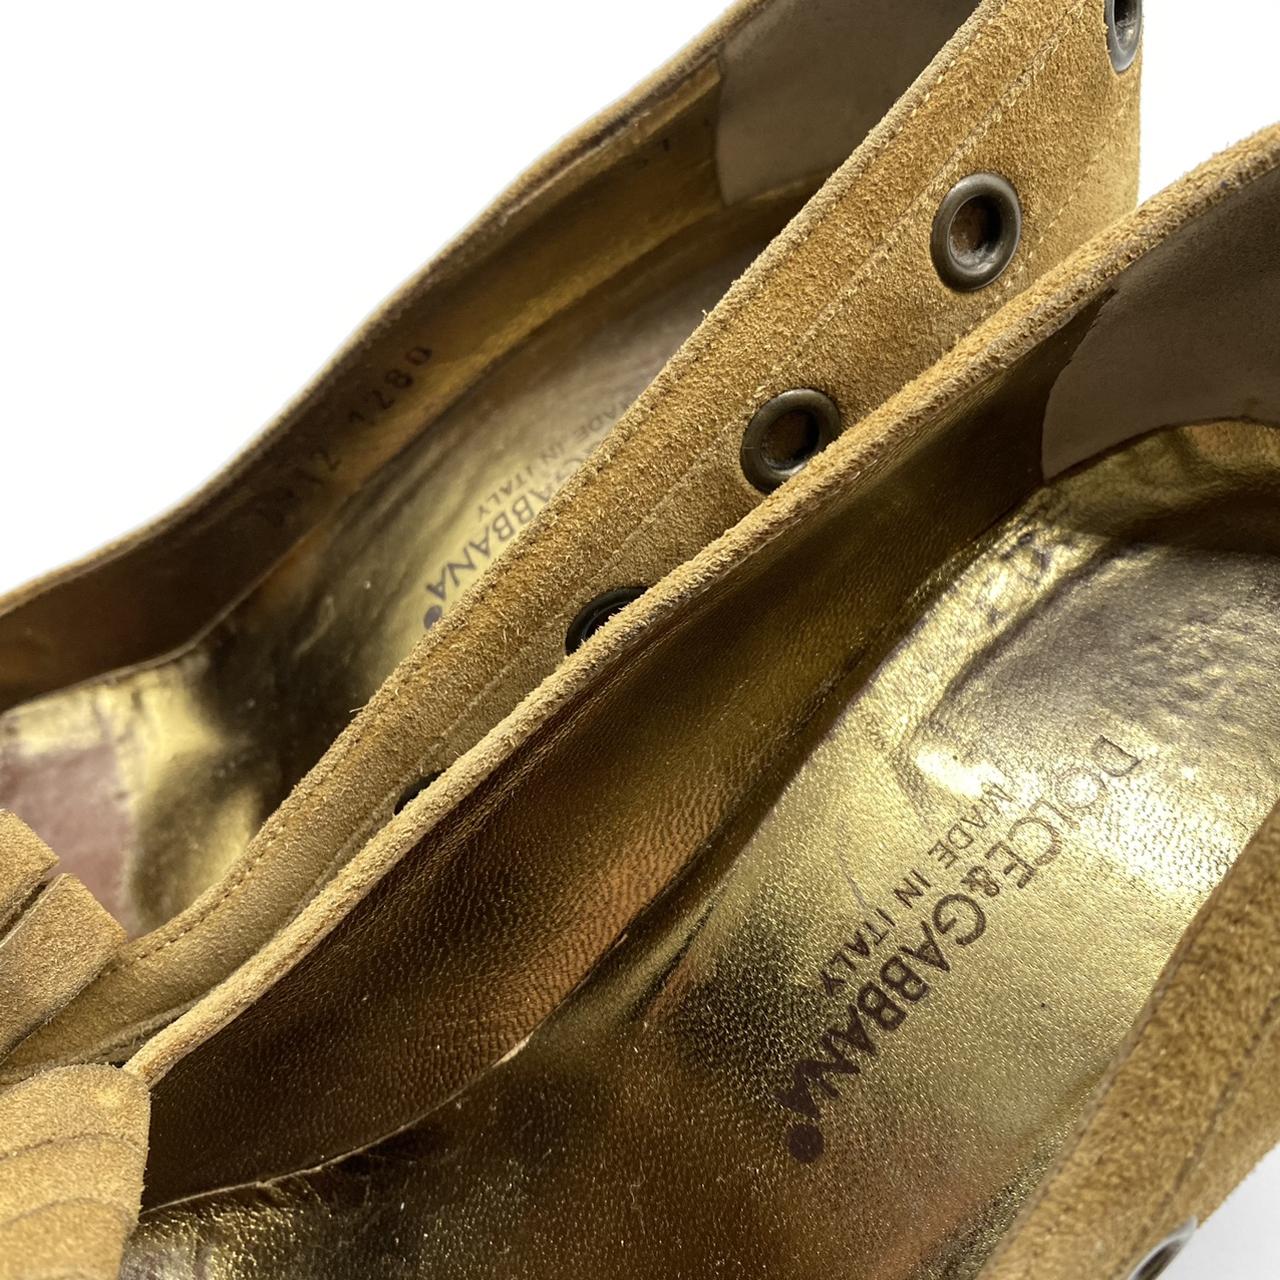 Vintage Dolce & Gabbana suede loafer heels with... - Depop